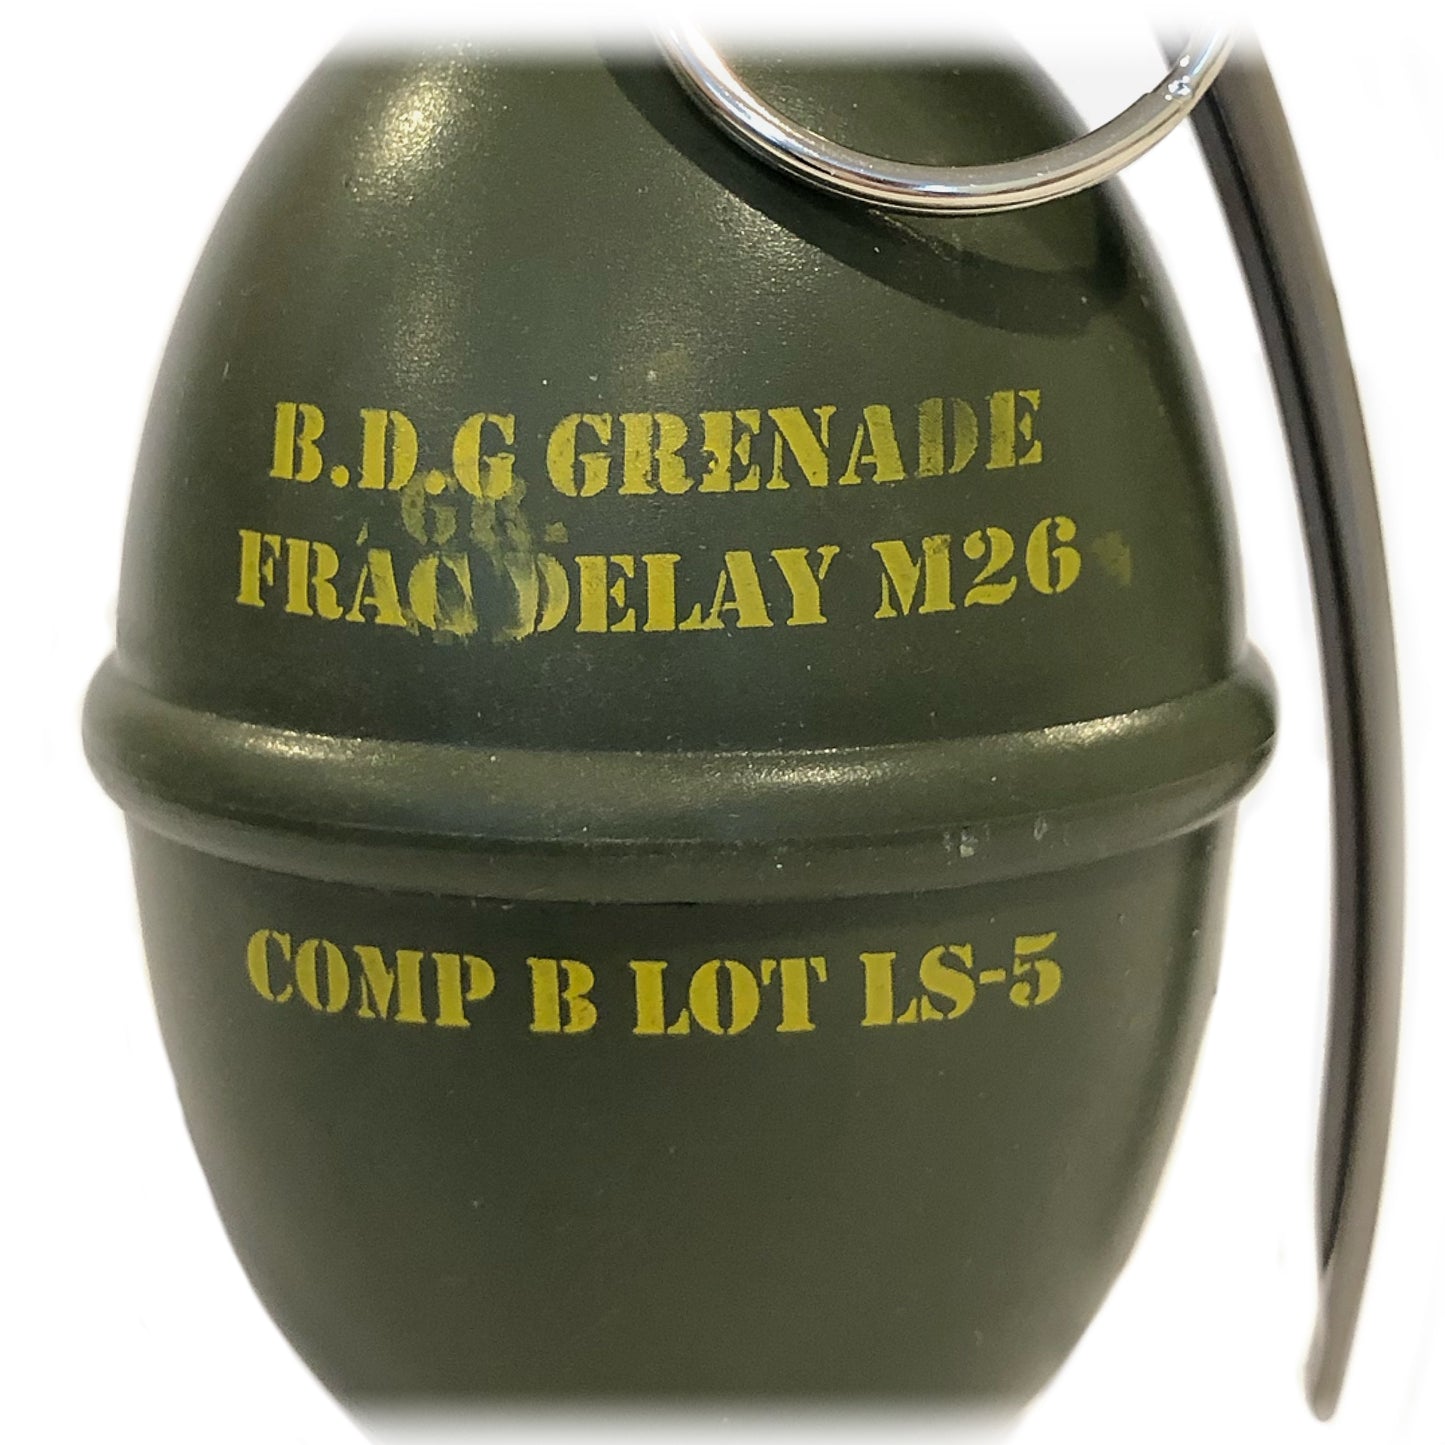 “bLeM” Grenade Dog Waste Dispenser